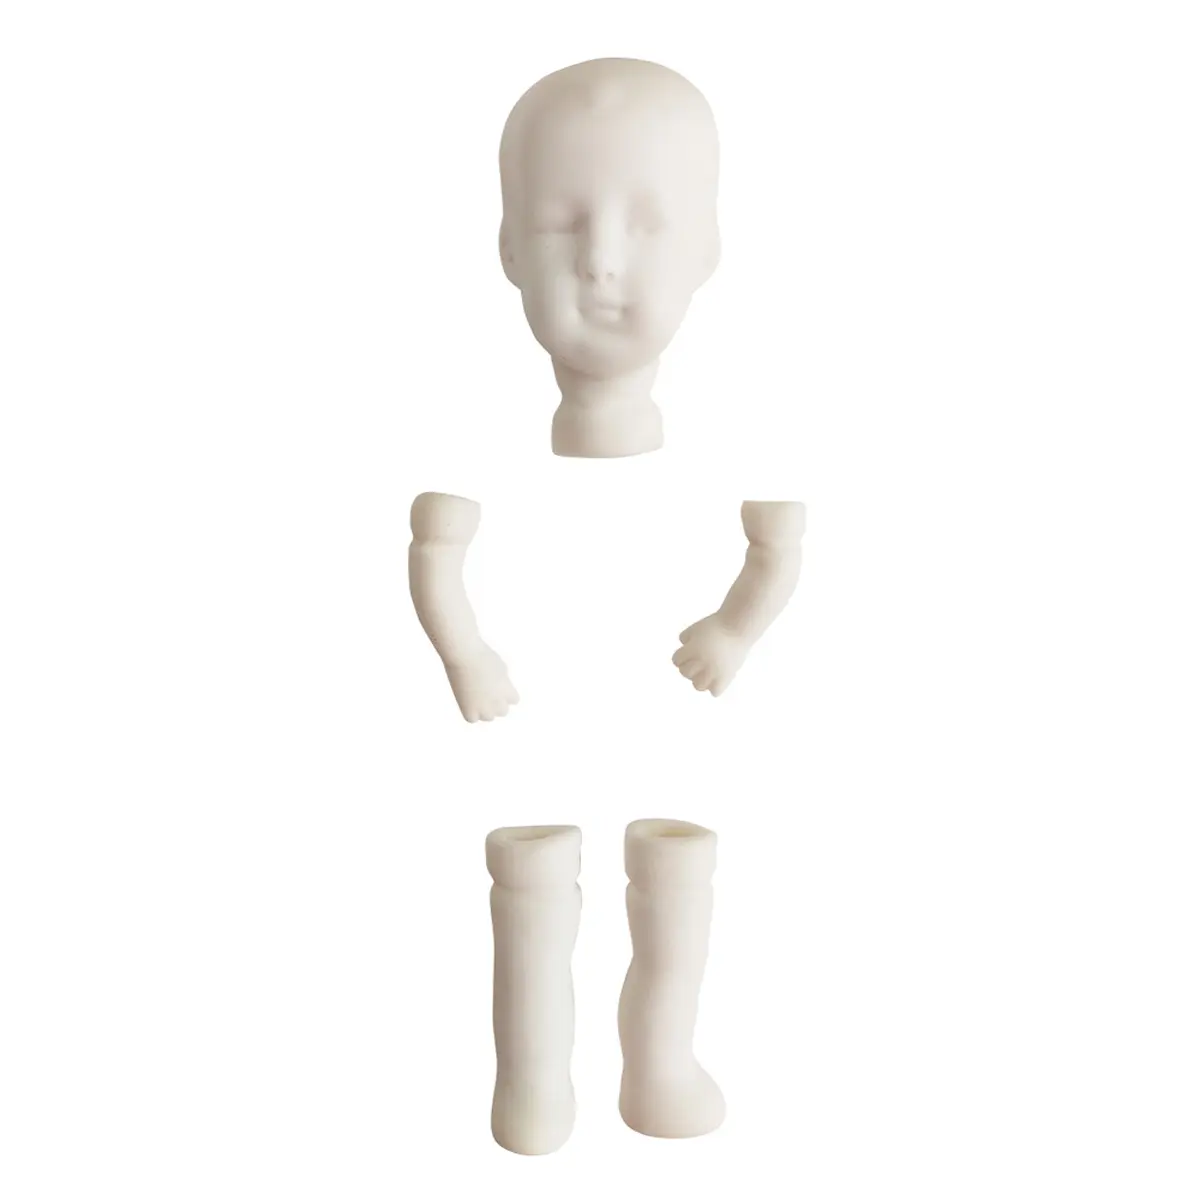 ช่องว่างพอร์ซเลนสำหรับการสร้างตุ๊กตา (หัวขาและแขน) ขายส่งจากชิ้นส่วนตุ๊กตาทำด้วยมือของผู้ผลิต